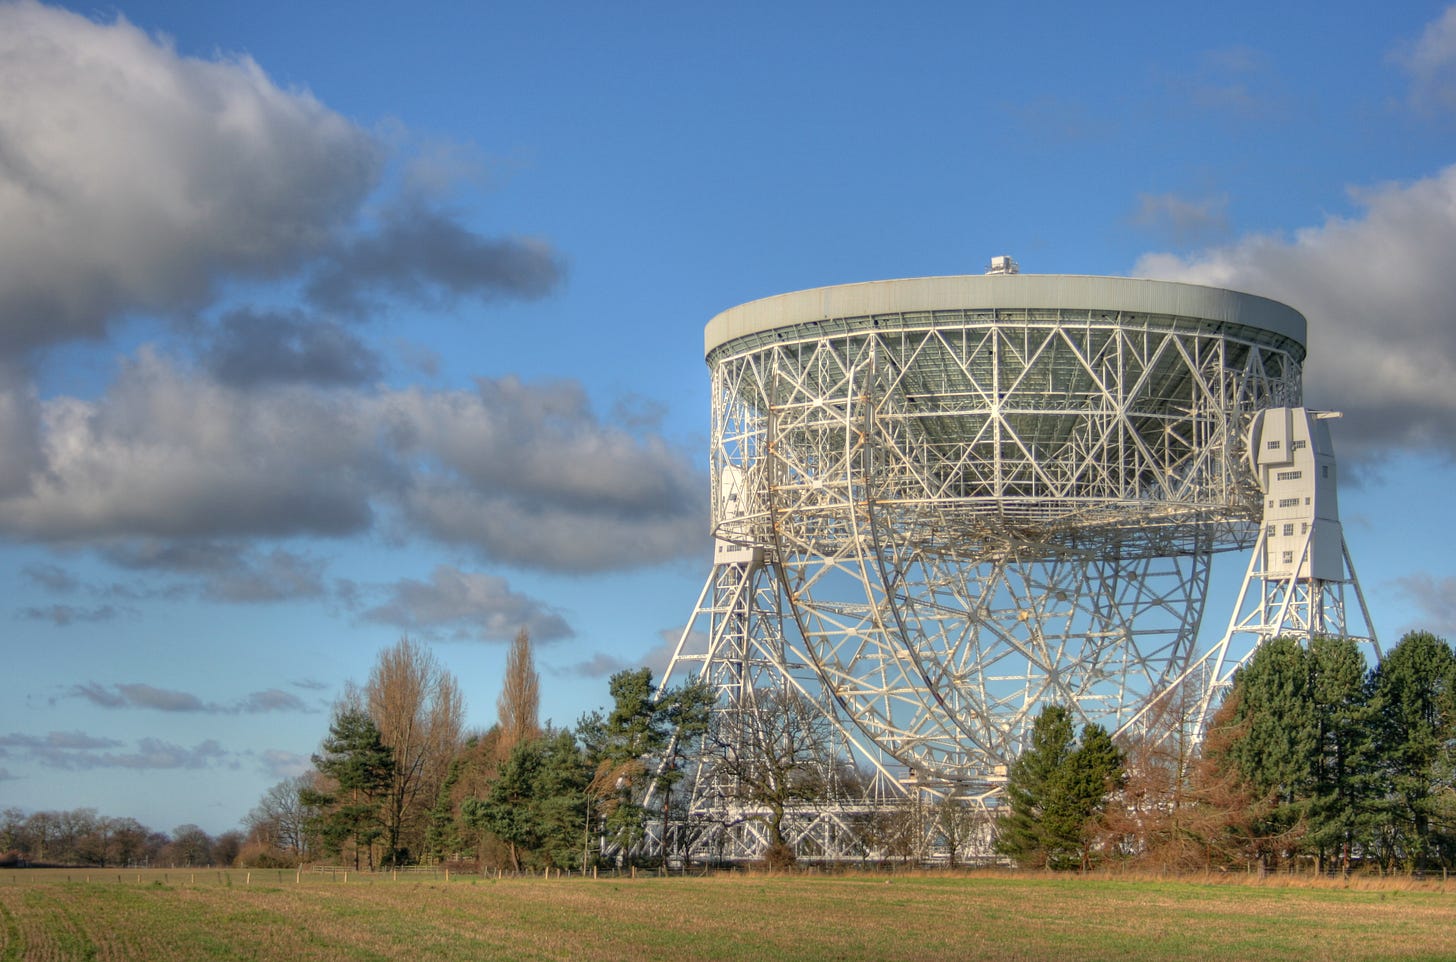 Lovell Telescope in Goostrey, UK